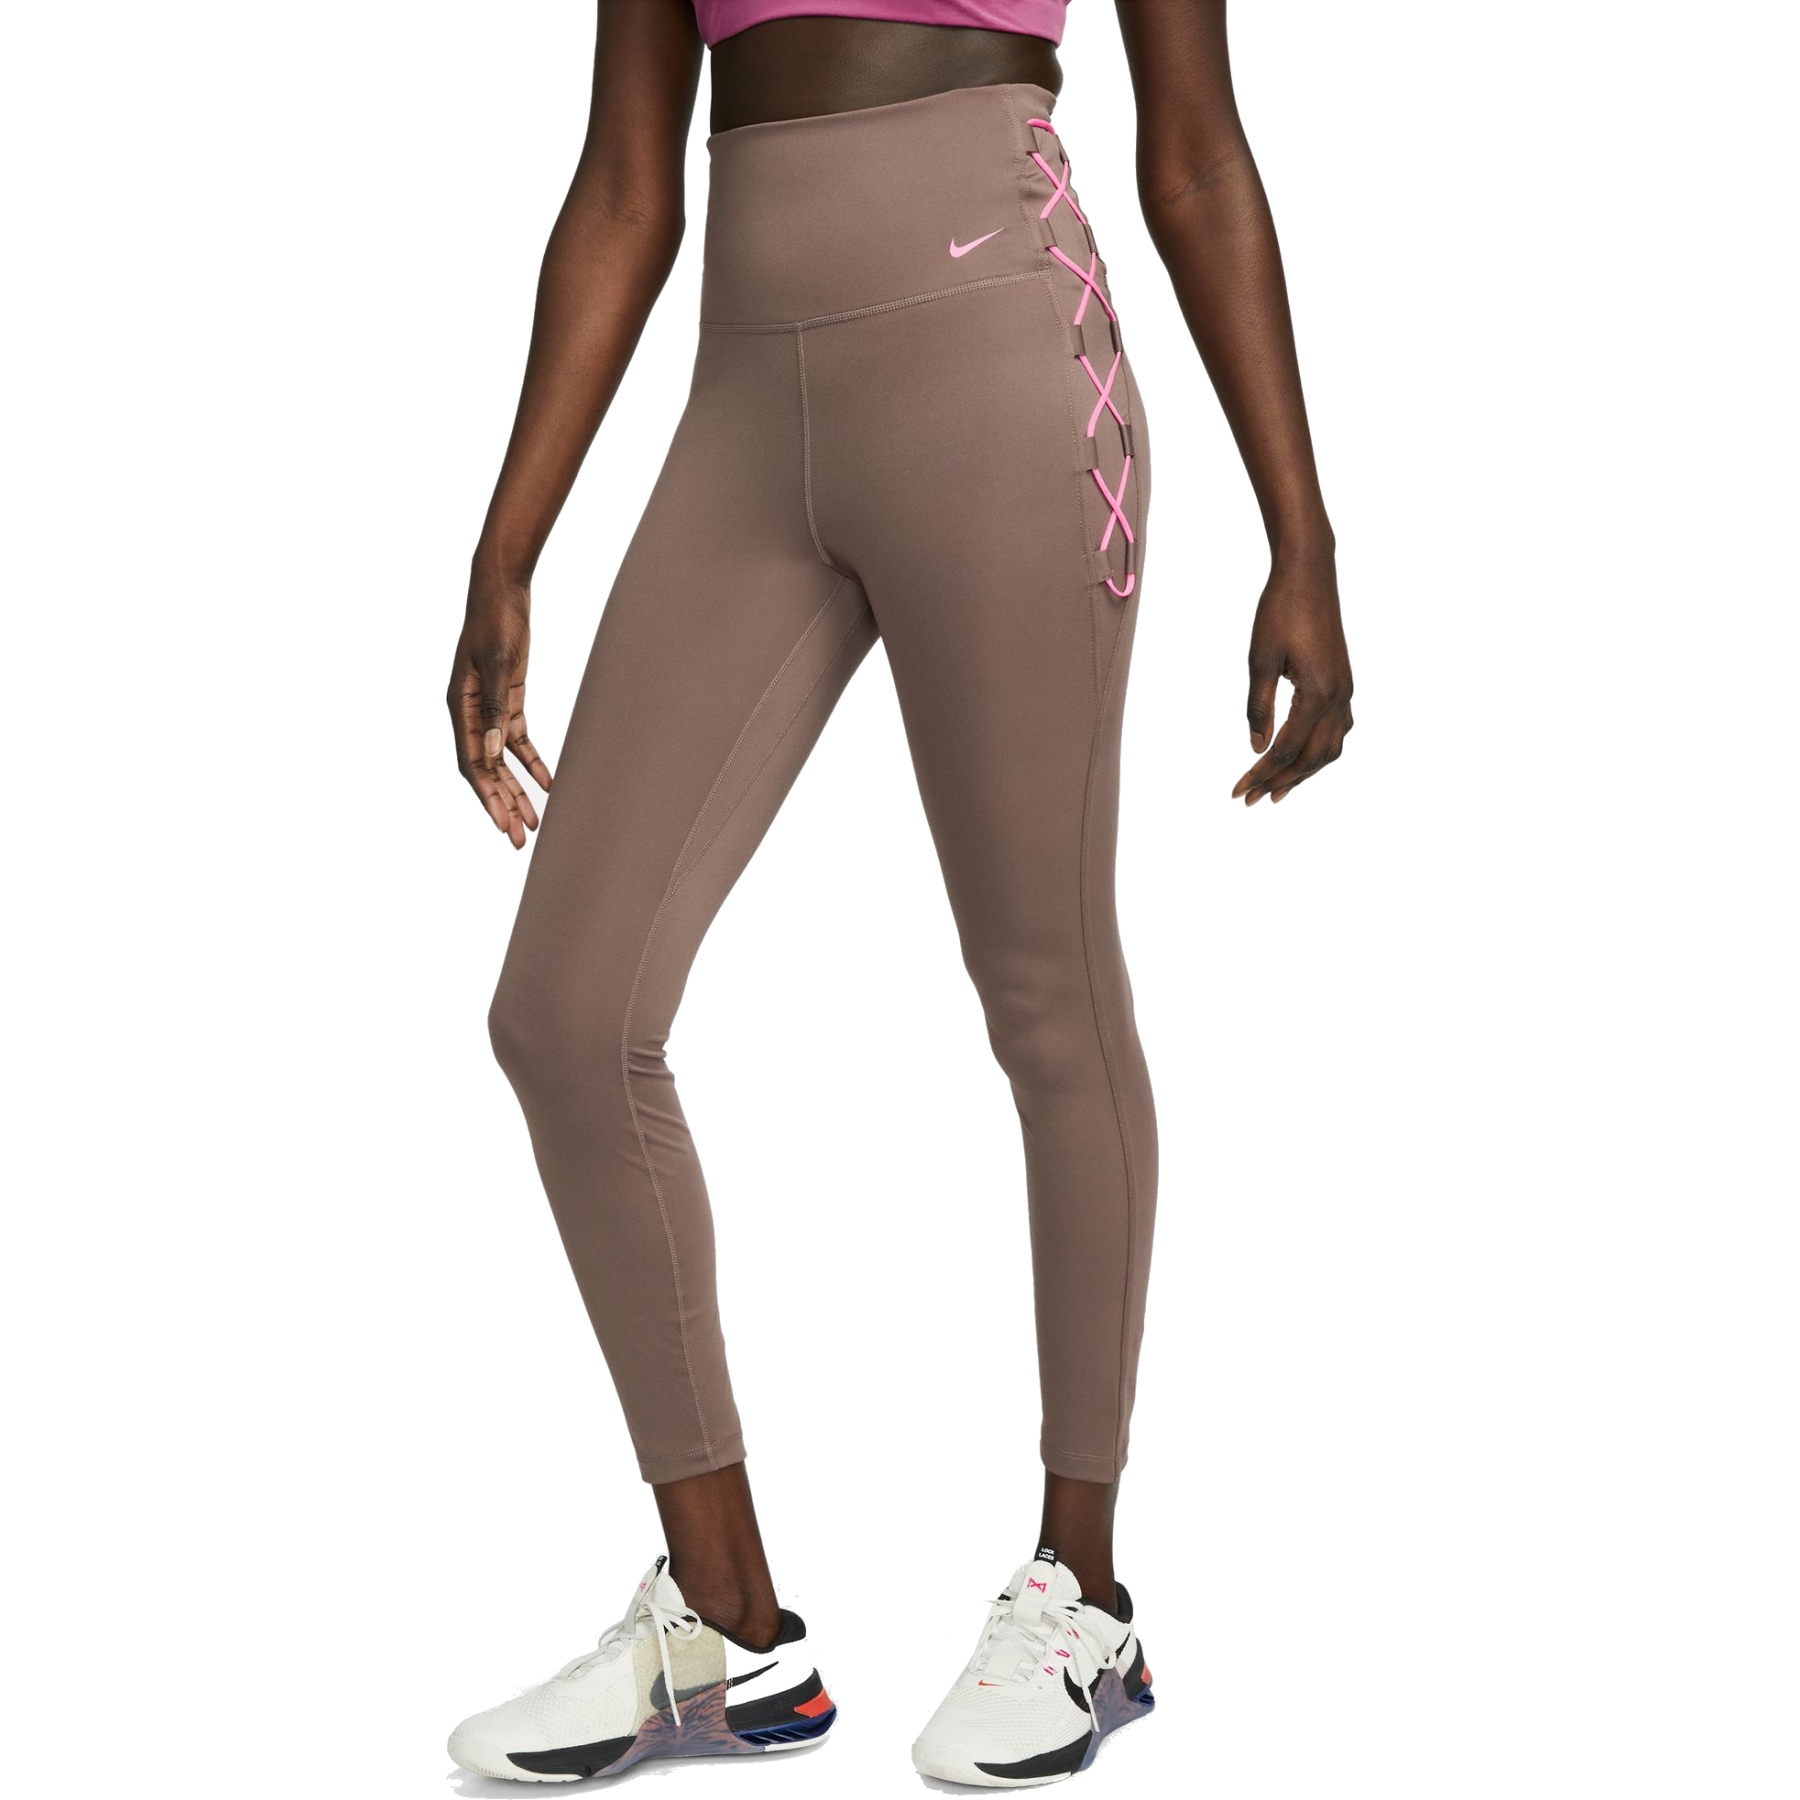 Bild von Nike One Dri-FIT 7/8 Novelty Tights Damen - plum eclipse/pink glow/pink glow DX0006-291